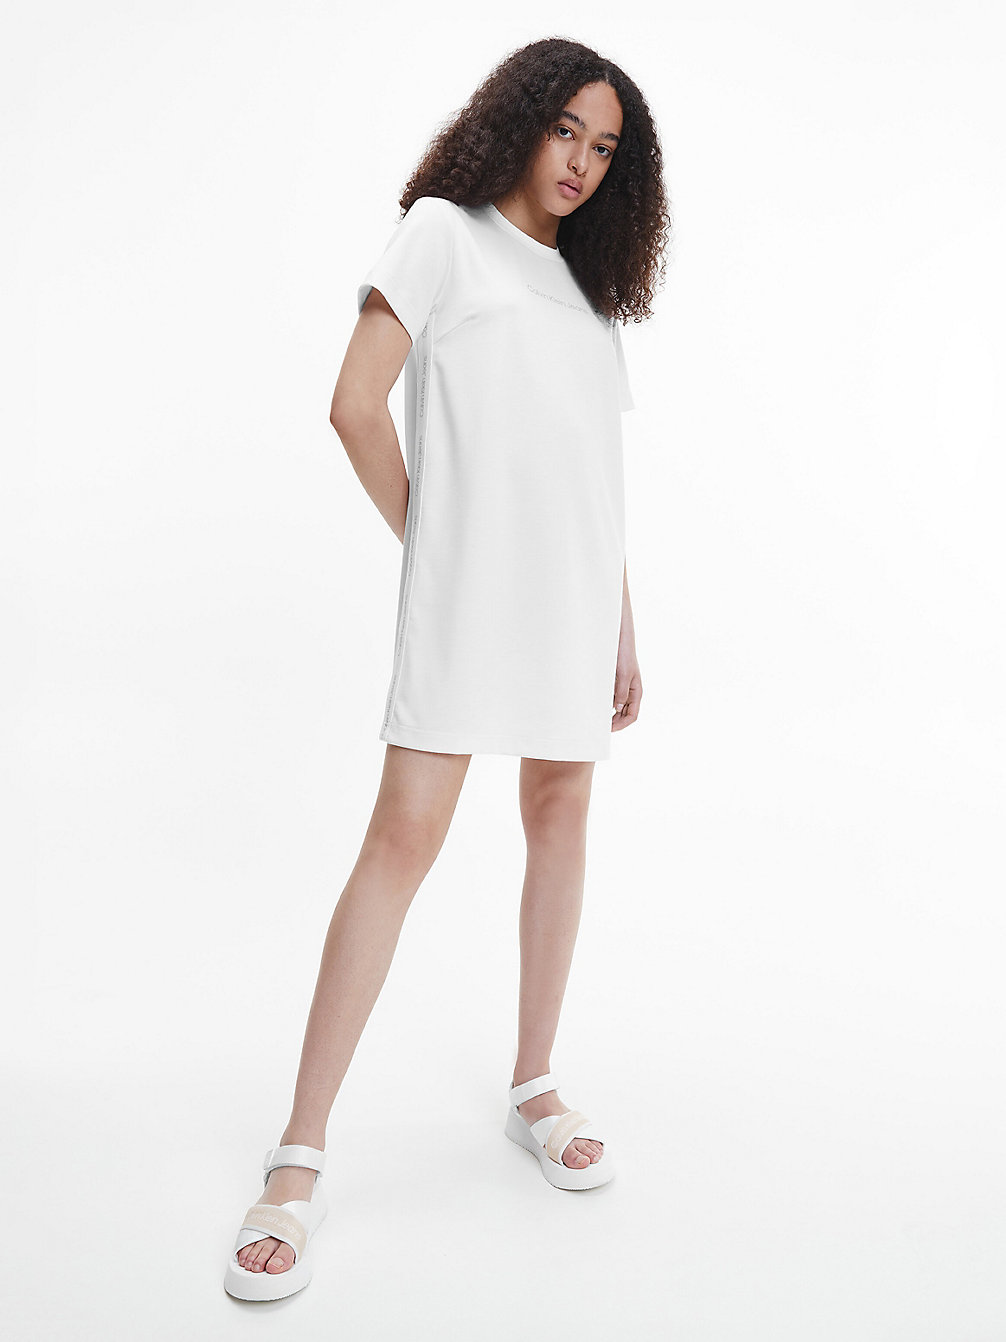 BRIGHT WHITE > Sukienka Typu T-Shirt Z Przetworzonego Dżerseju Milano > undefined Kobiety - Calvin Klein